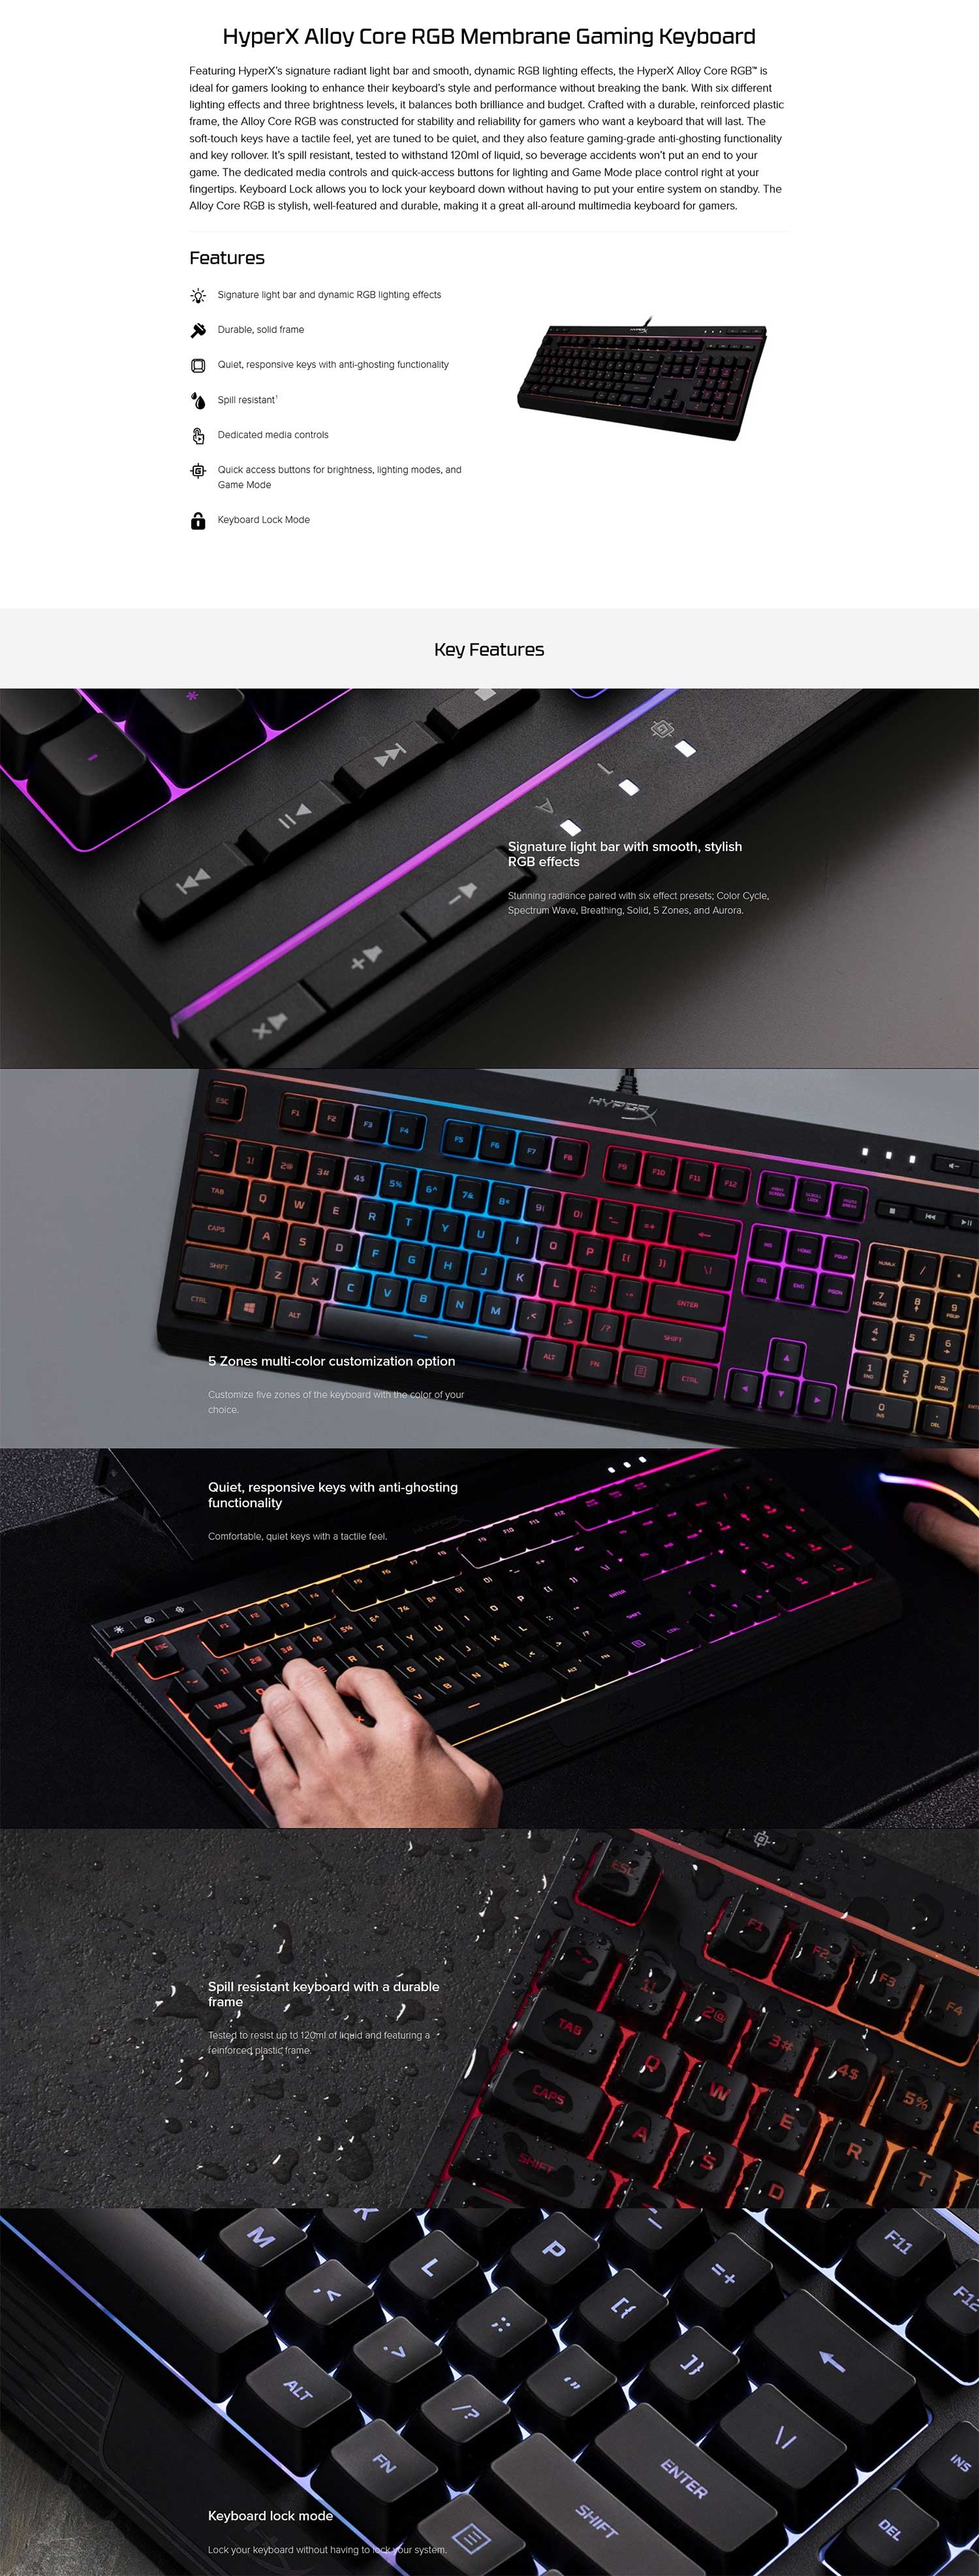 Kingston HyperX Alloy Core Membrane Gaming Keyboard HX-KB5ME2-US Details